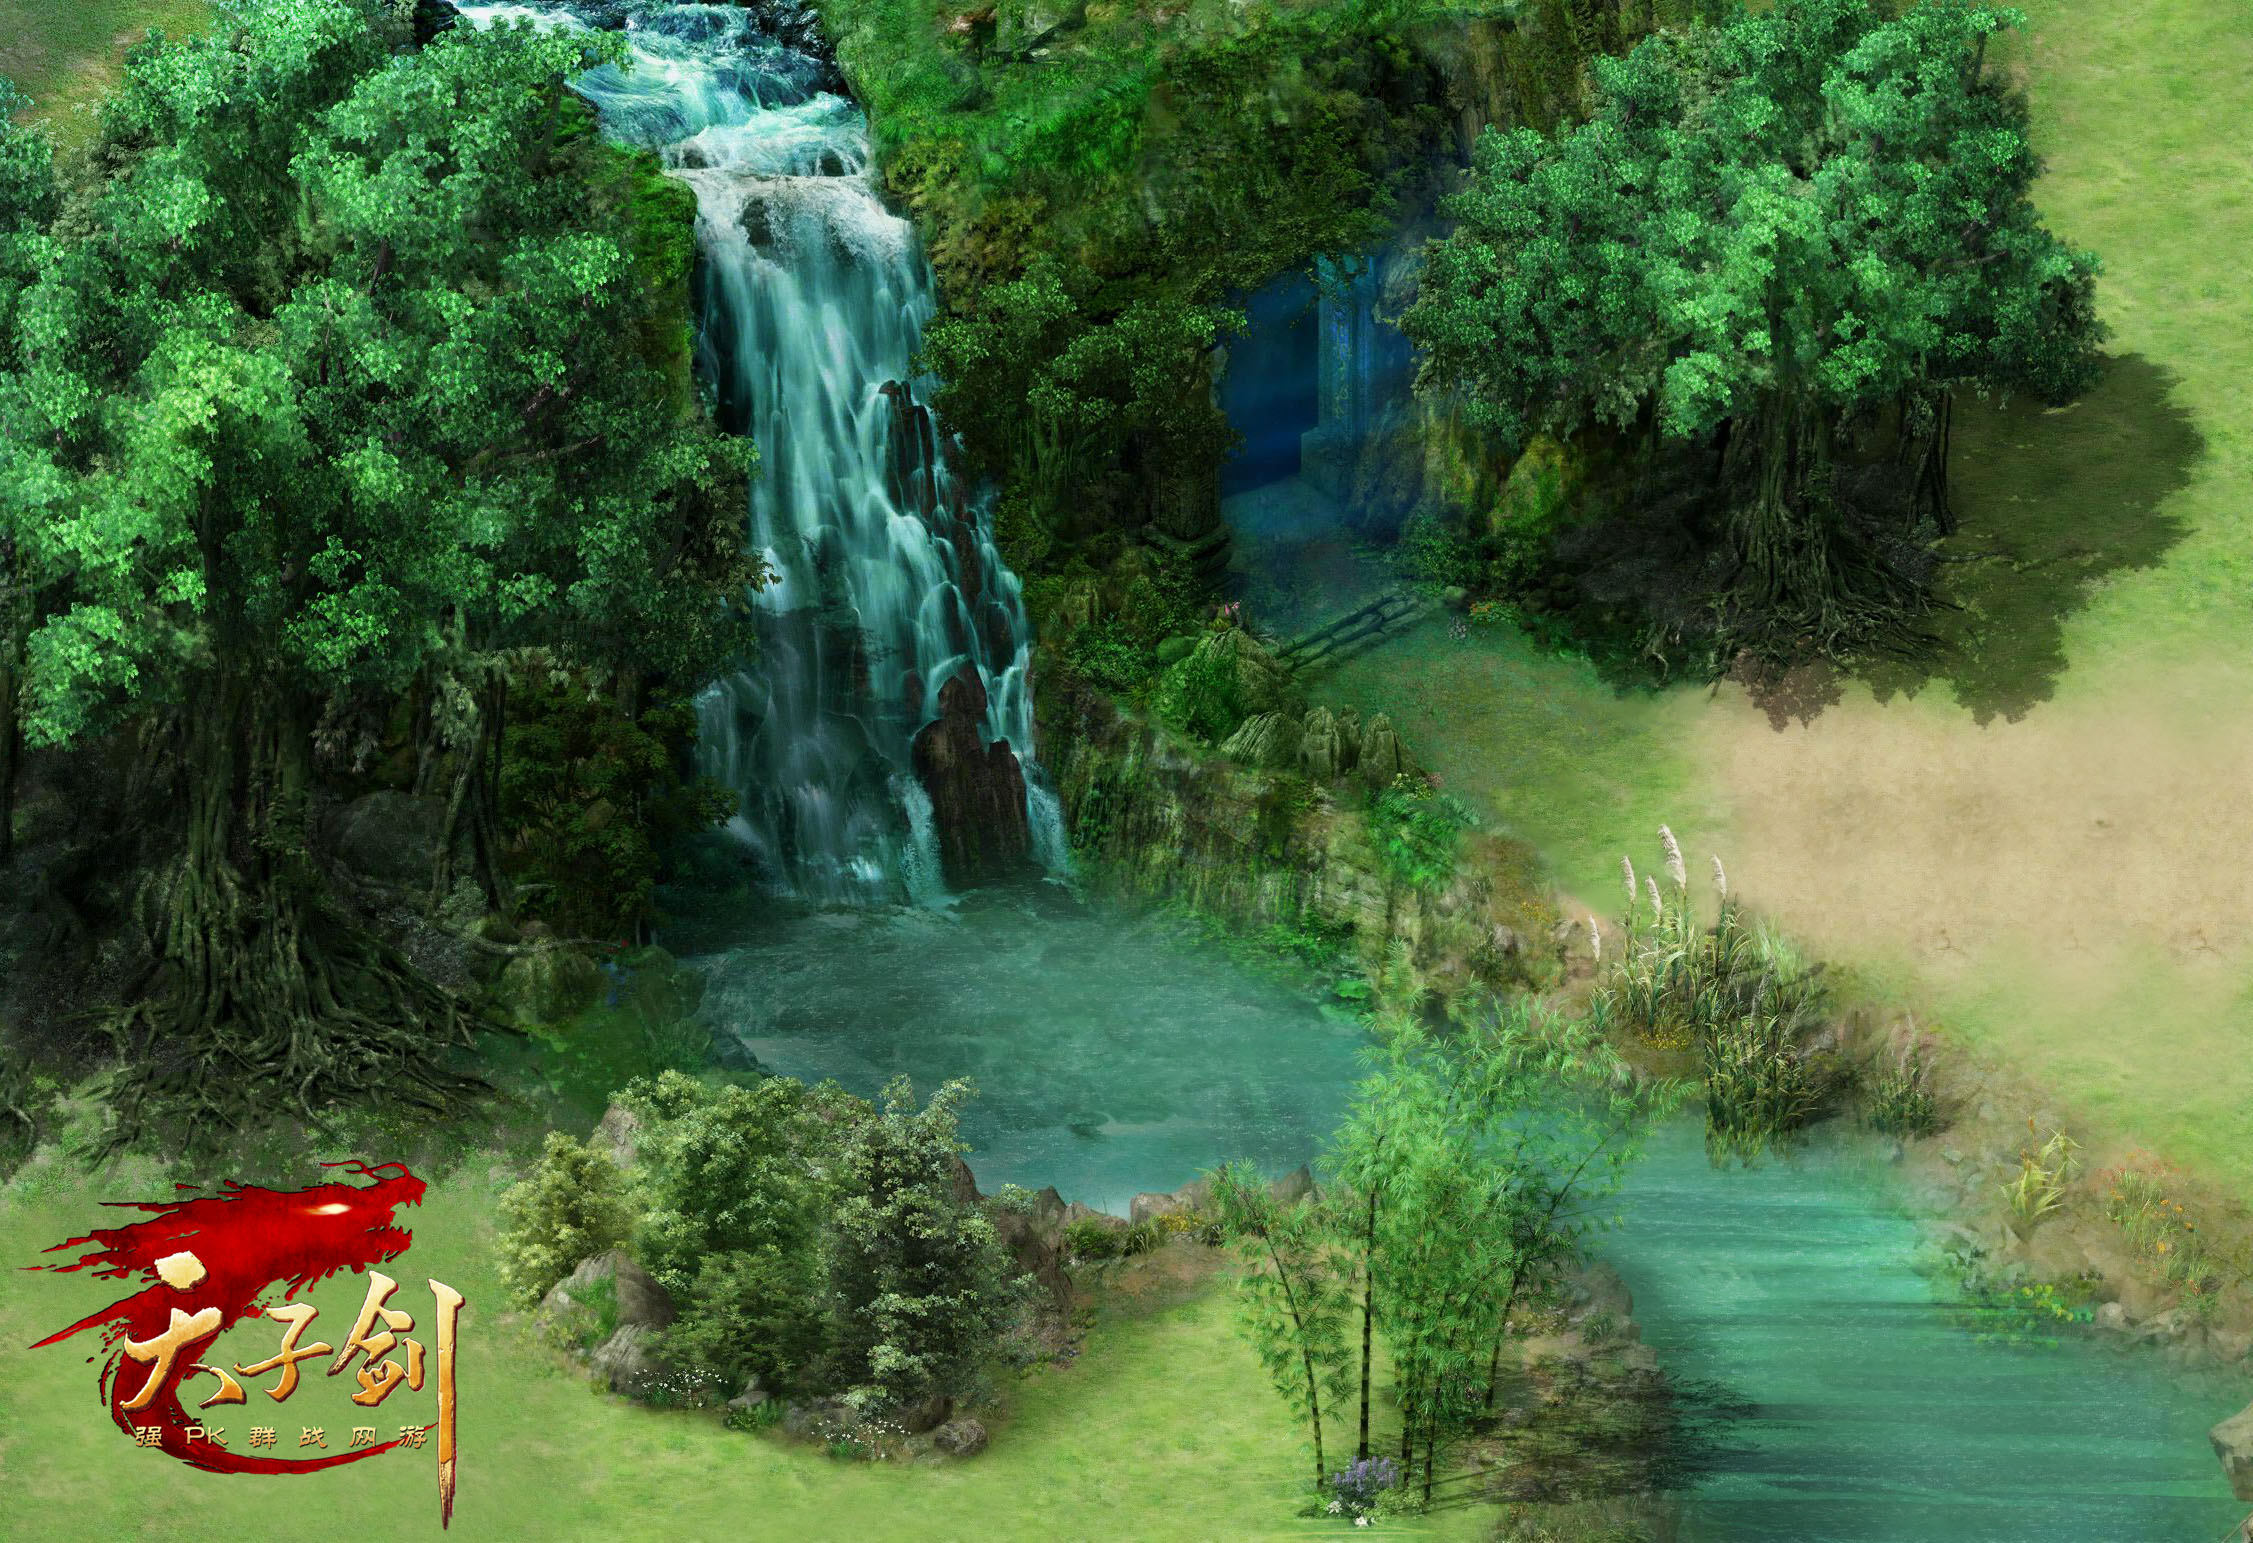 《天子剑》游戏原画 - 青山绿水